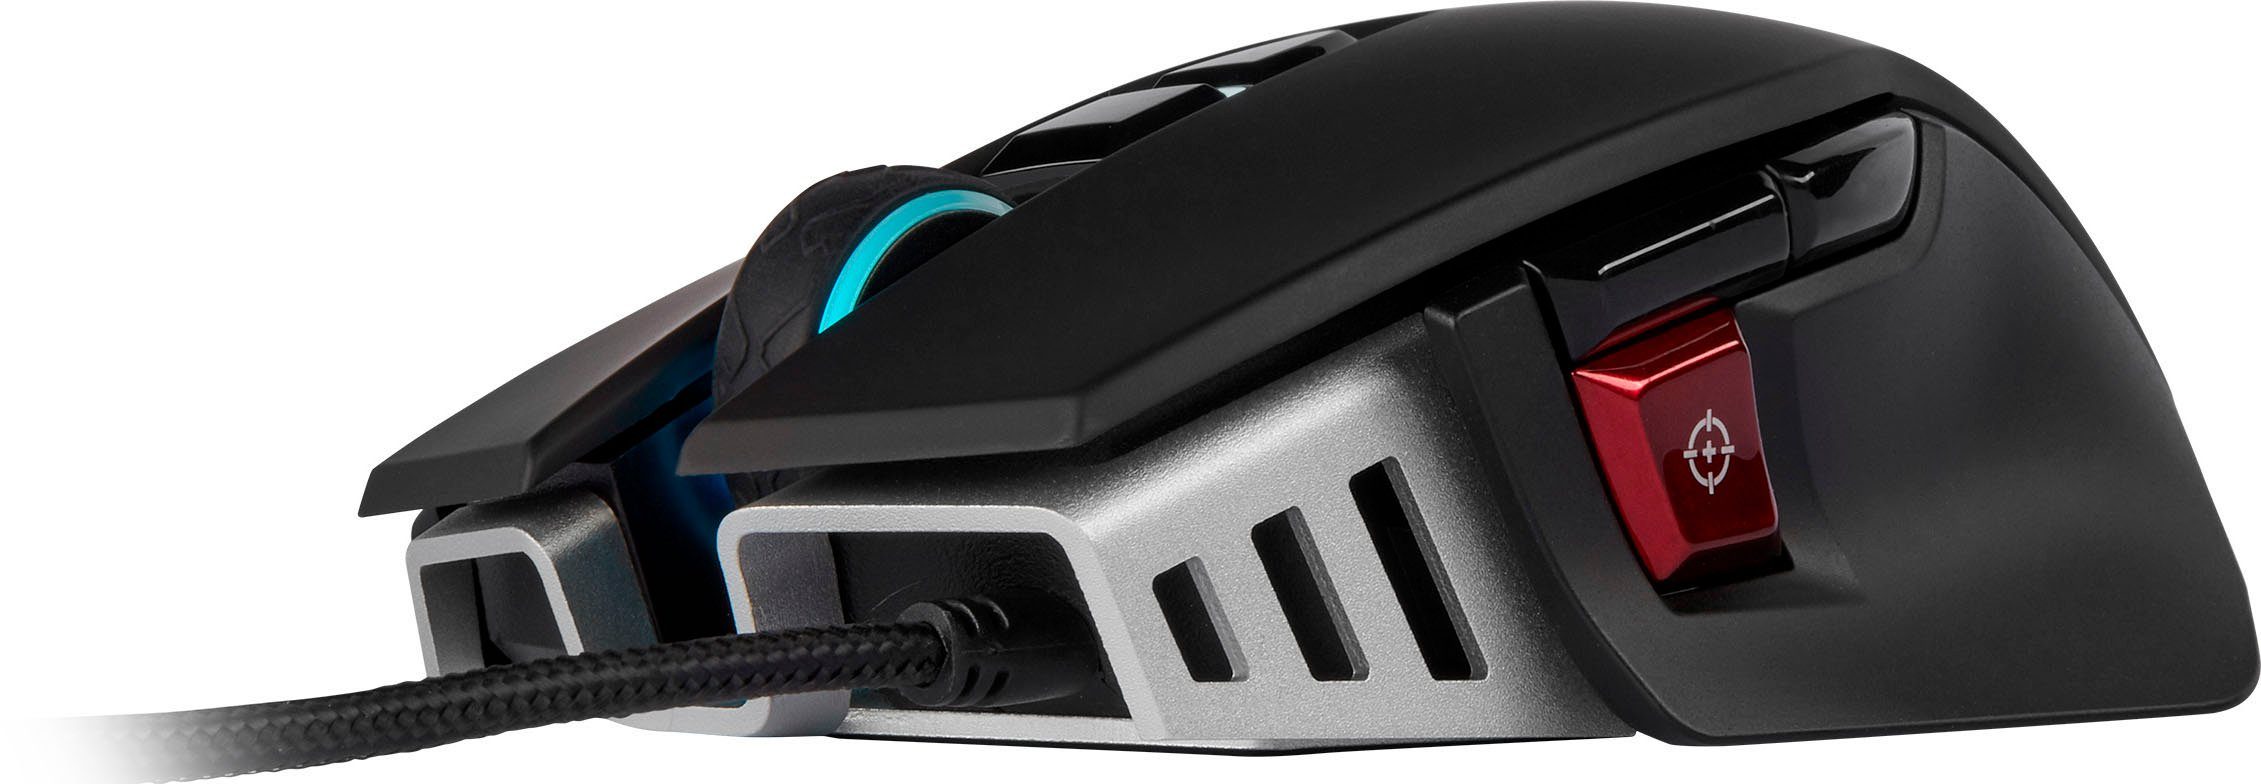 Gaming (kabelgebunden) ELITE Corsair RGB Gaming-Maus Mouse M65